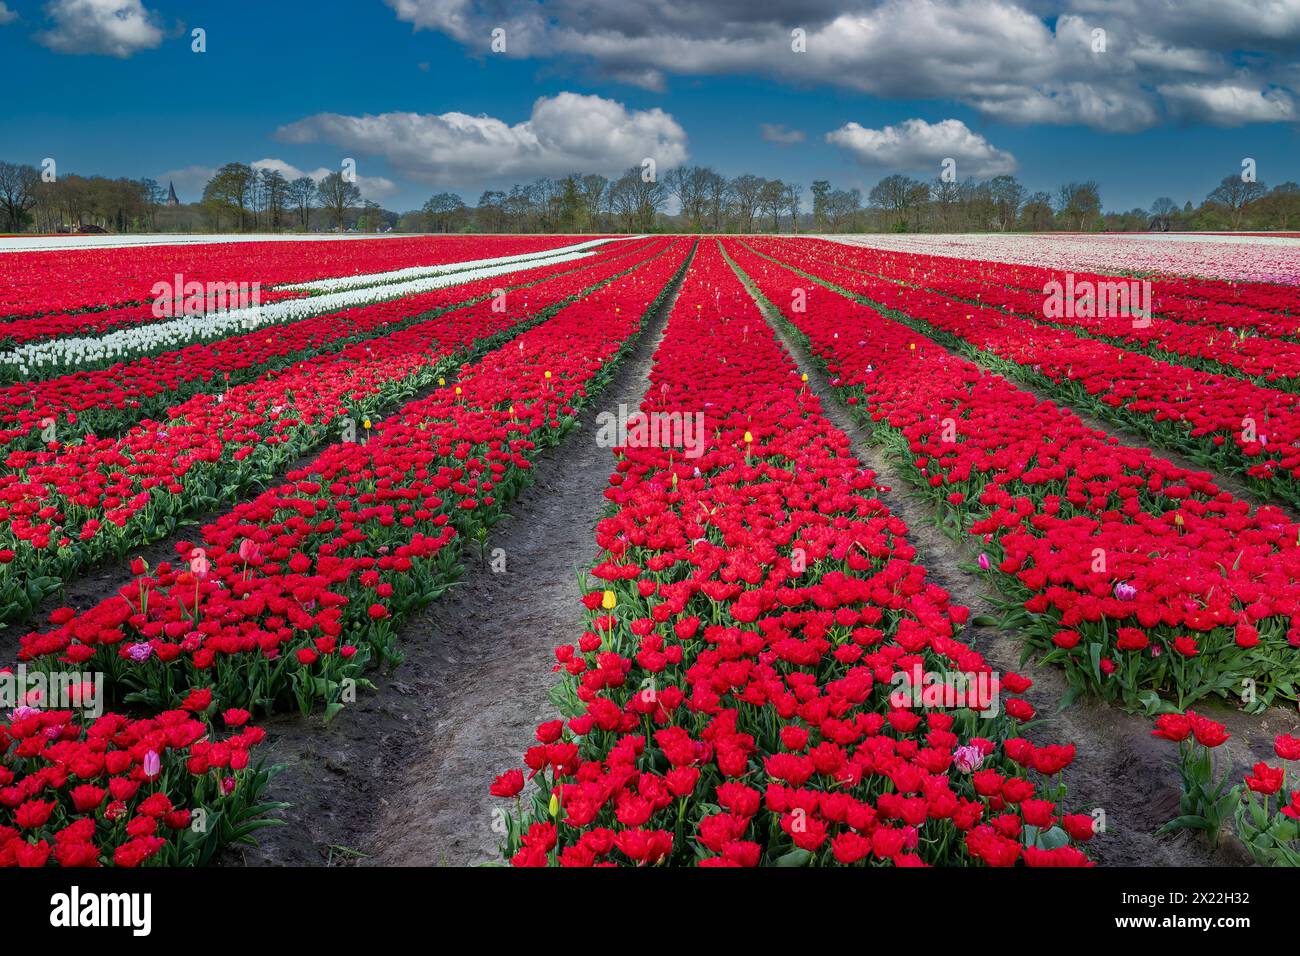 Landschaft niederländisches Blumenzwiebelfeld mit einer wachsenden doppelten roten frühen Tulpensorte, die als ERSTER PREIS bezeichnet wird, in engen vertikalen Linien zum Horizont gegen eine Ba Stockfoto